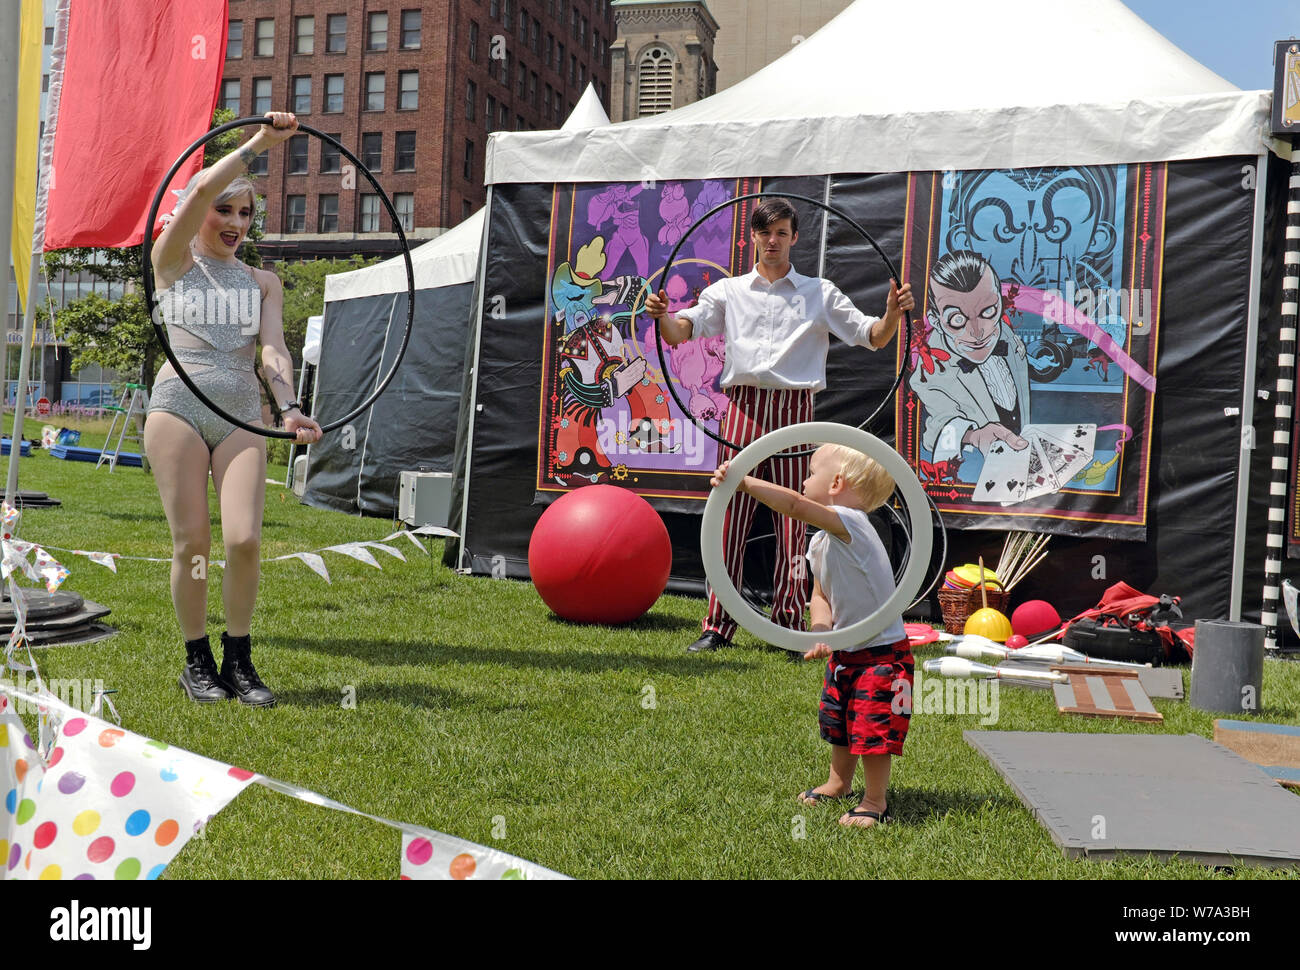 Les artistes néo-vaudevlile jouer avec un garçon aux cheveux blonds et à l'extérieur de leur performance tente sur la place publique dans le centre-ville de Cleveland, Ohio, USA. Banque D'Images